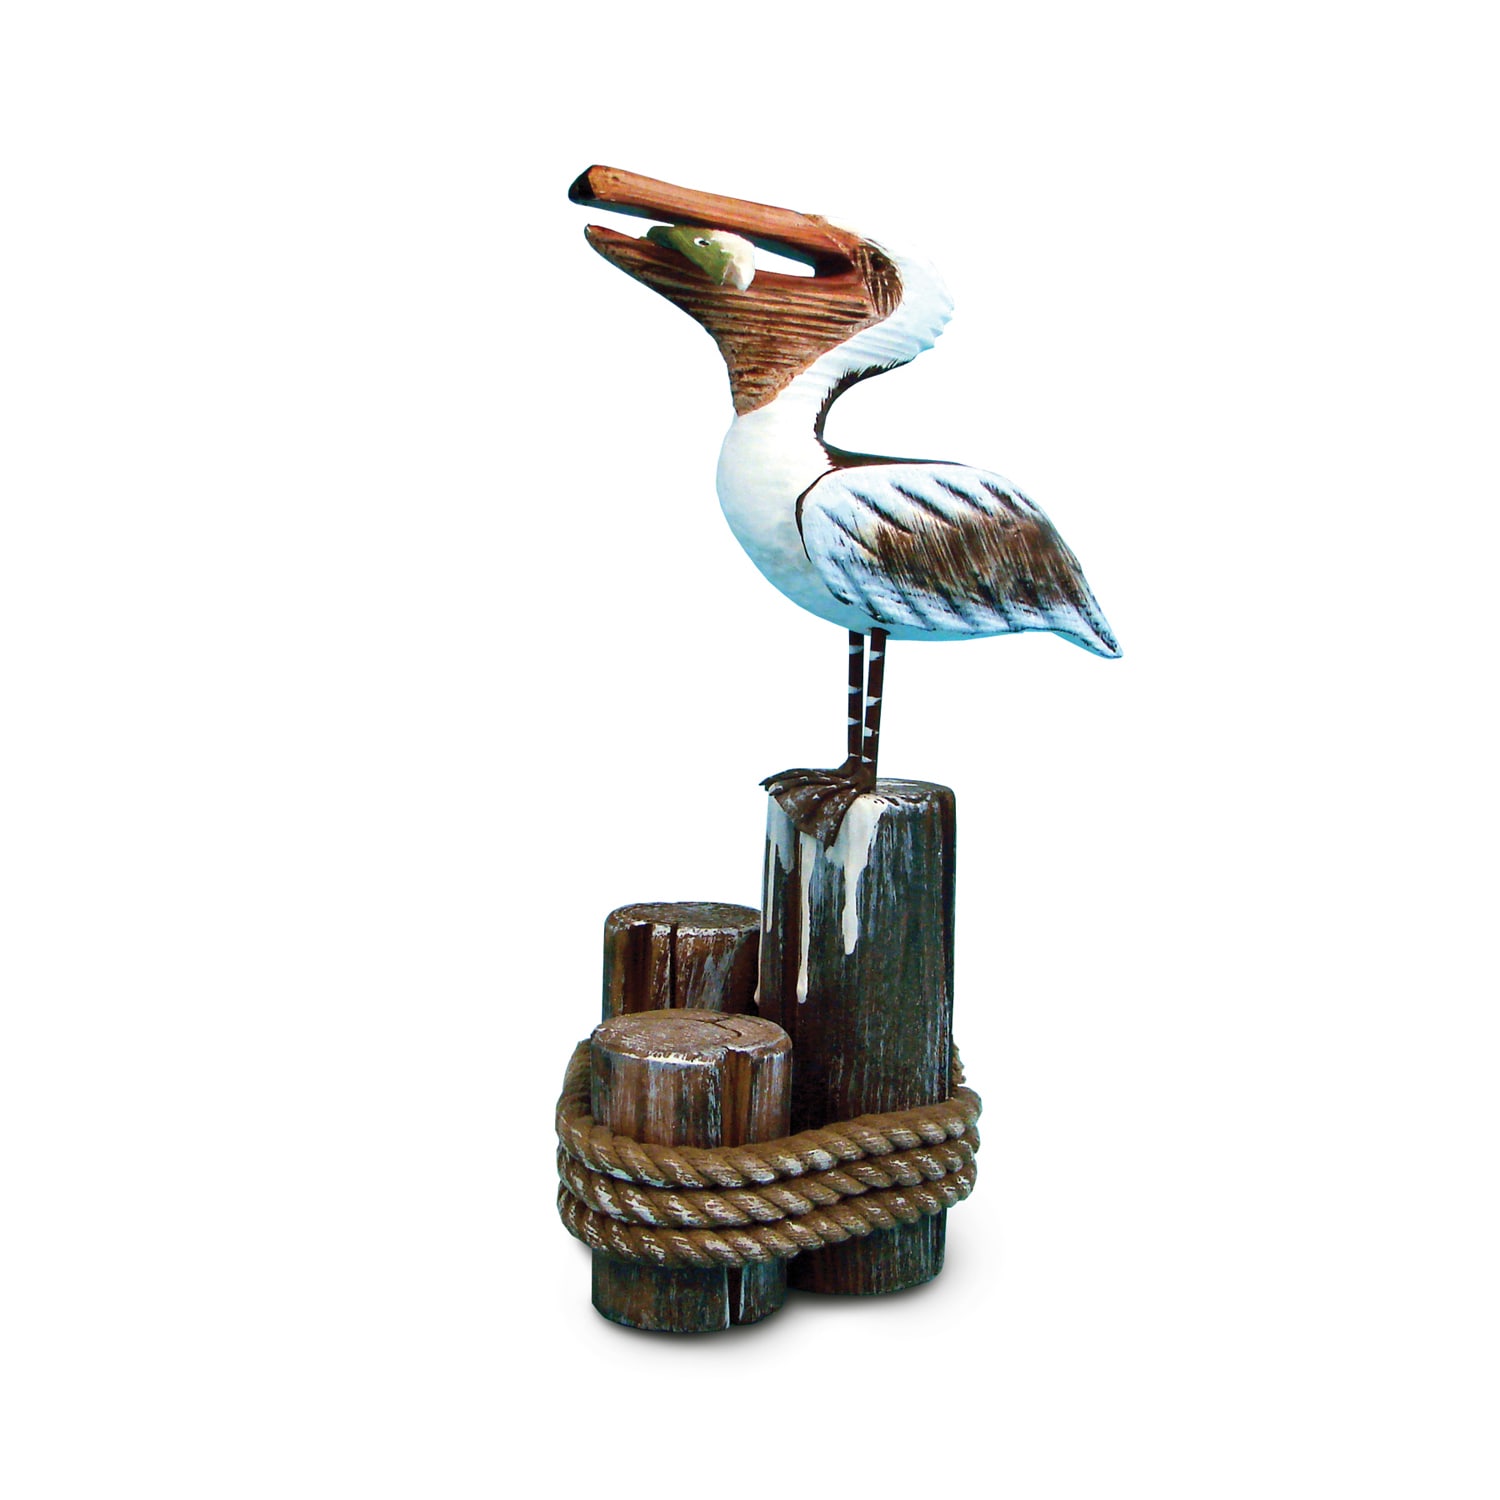 Bath tray, Modern farmhouse, modern rustic decor, shower caddy, free  shipping - The Rustic Pelican